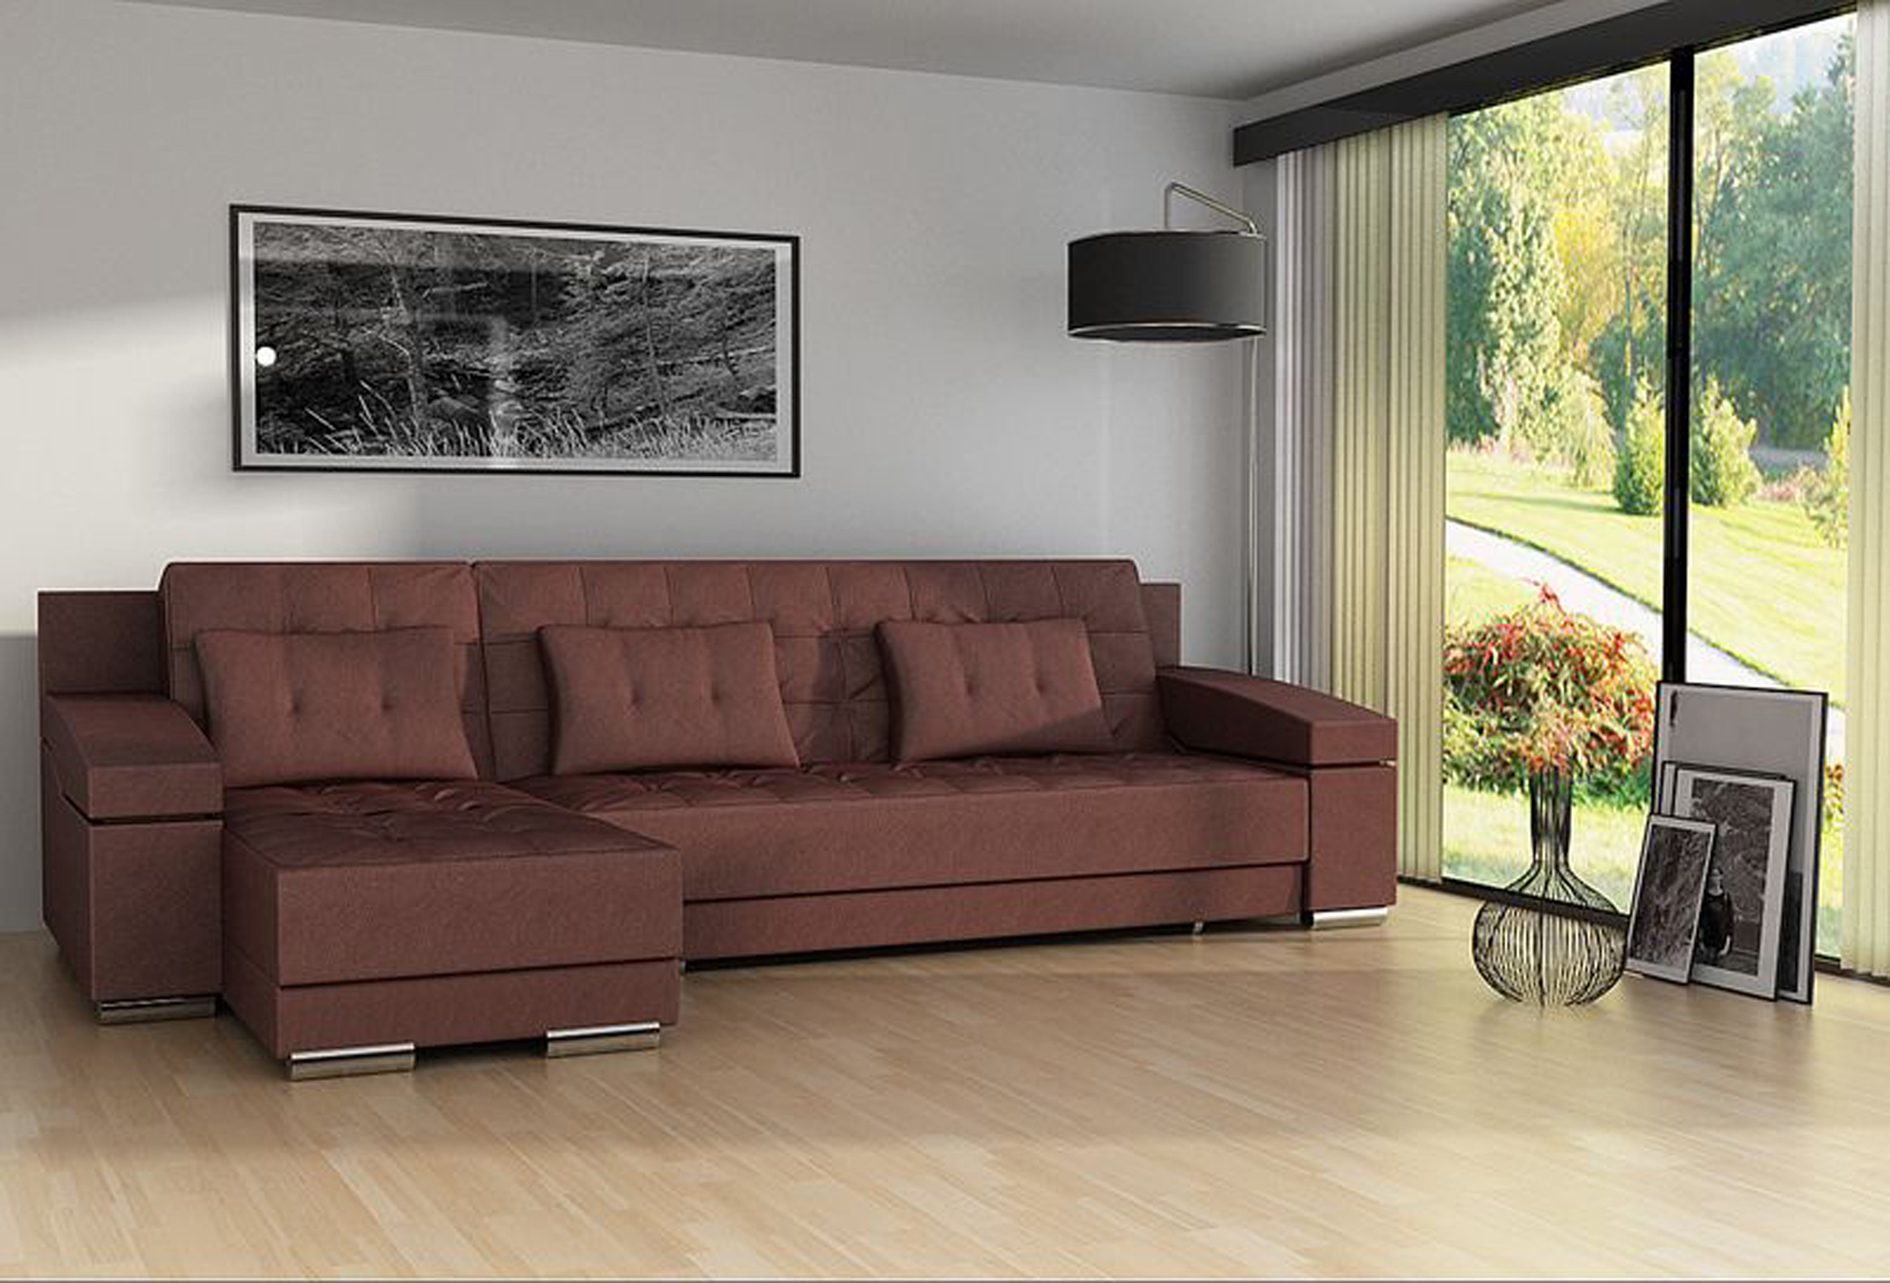 šviesi kampinė sofa prieškambario stiliaus